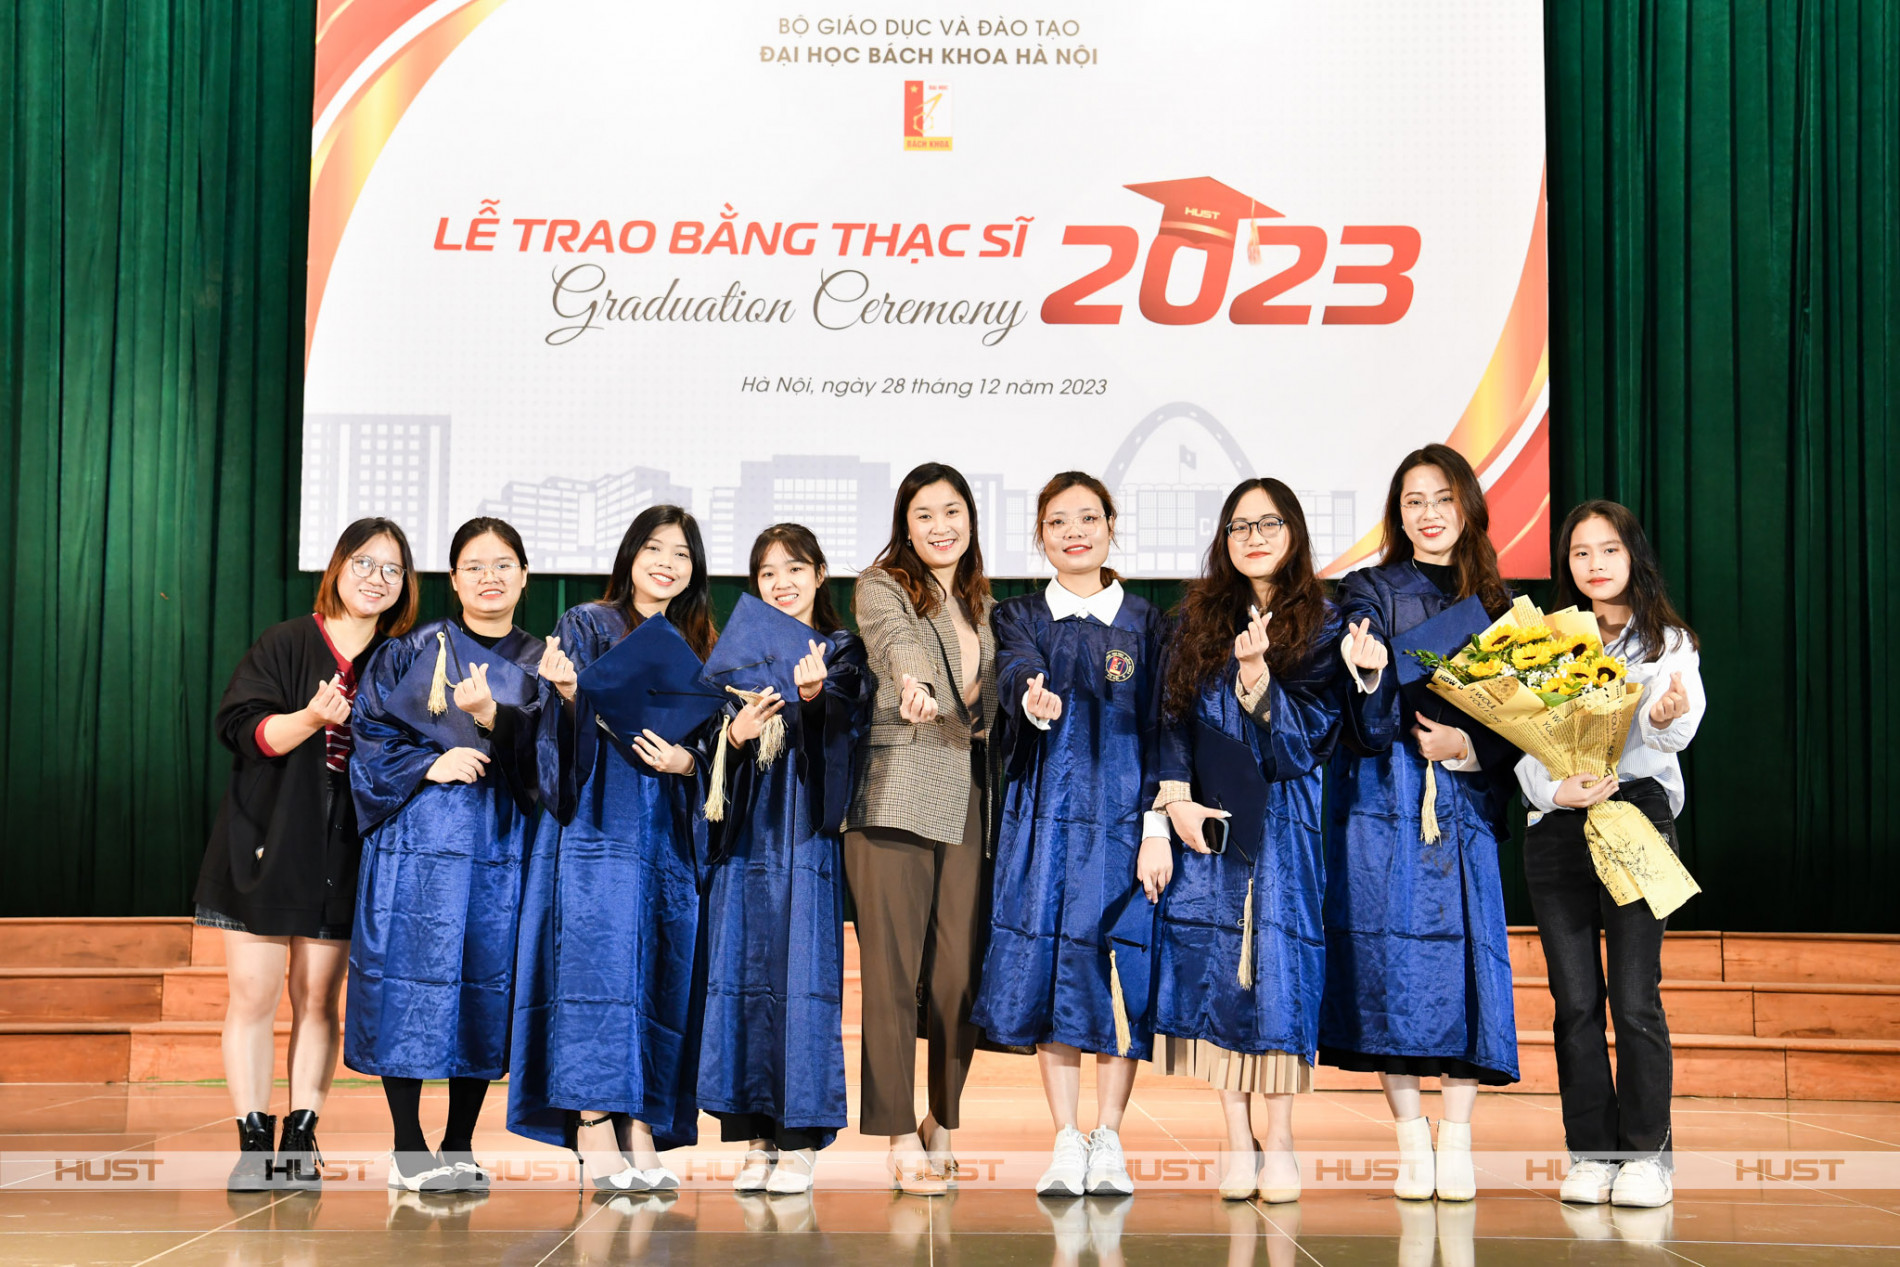 PGS. TS. Vũ Thu Trang, Phó trưởng Khoa KT Thực Phẩm, chụp cùng các Tân Thạc sĩ ngành KT Thực phẩm